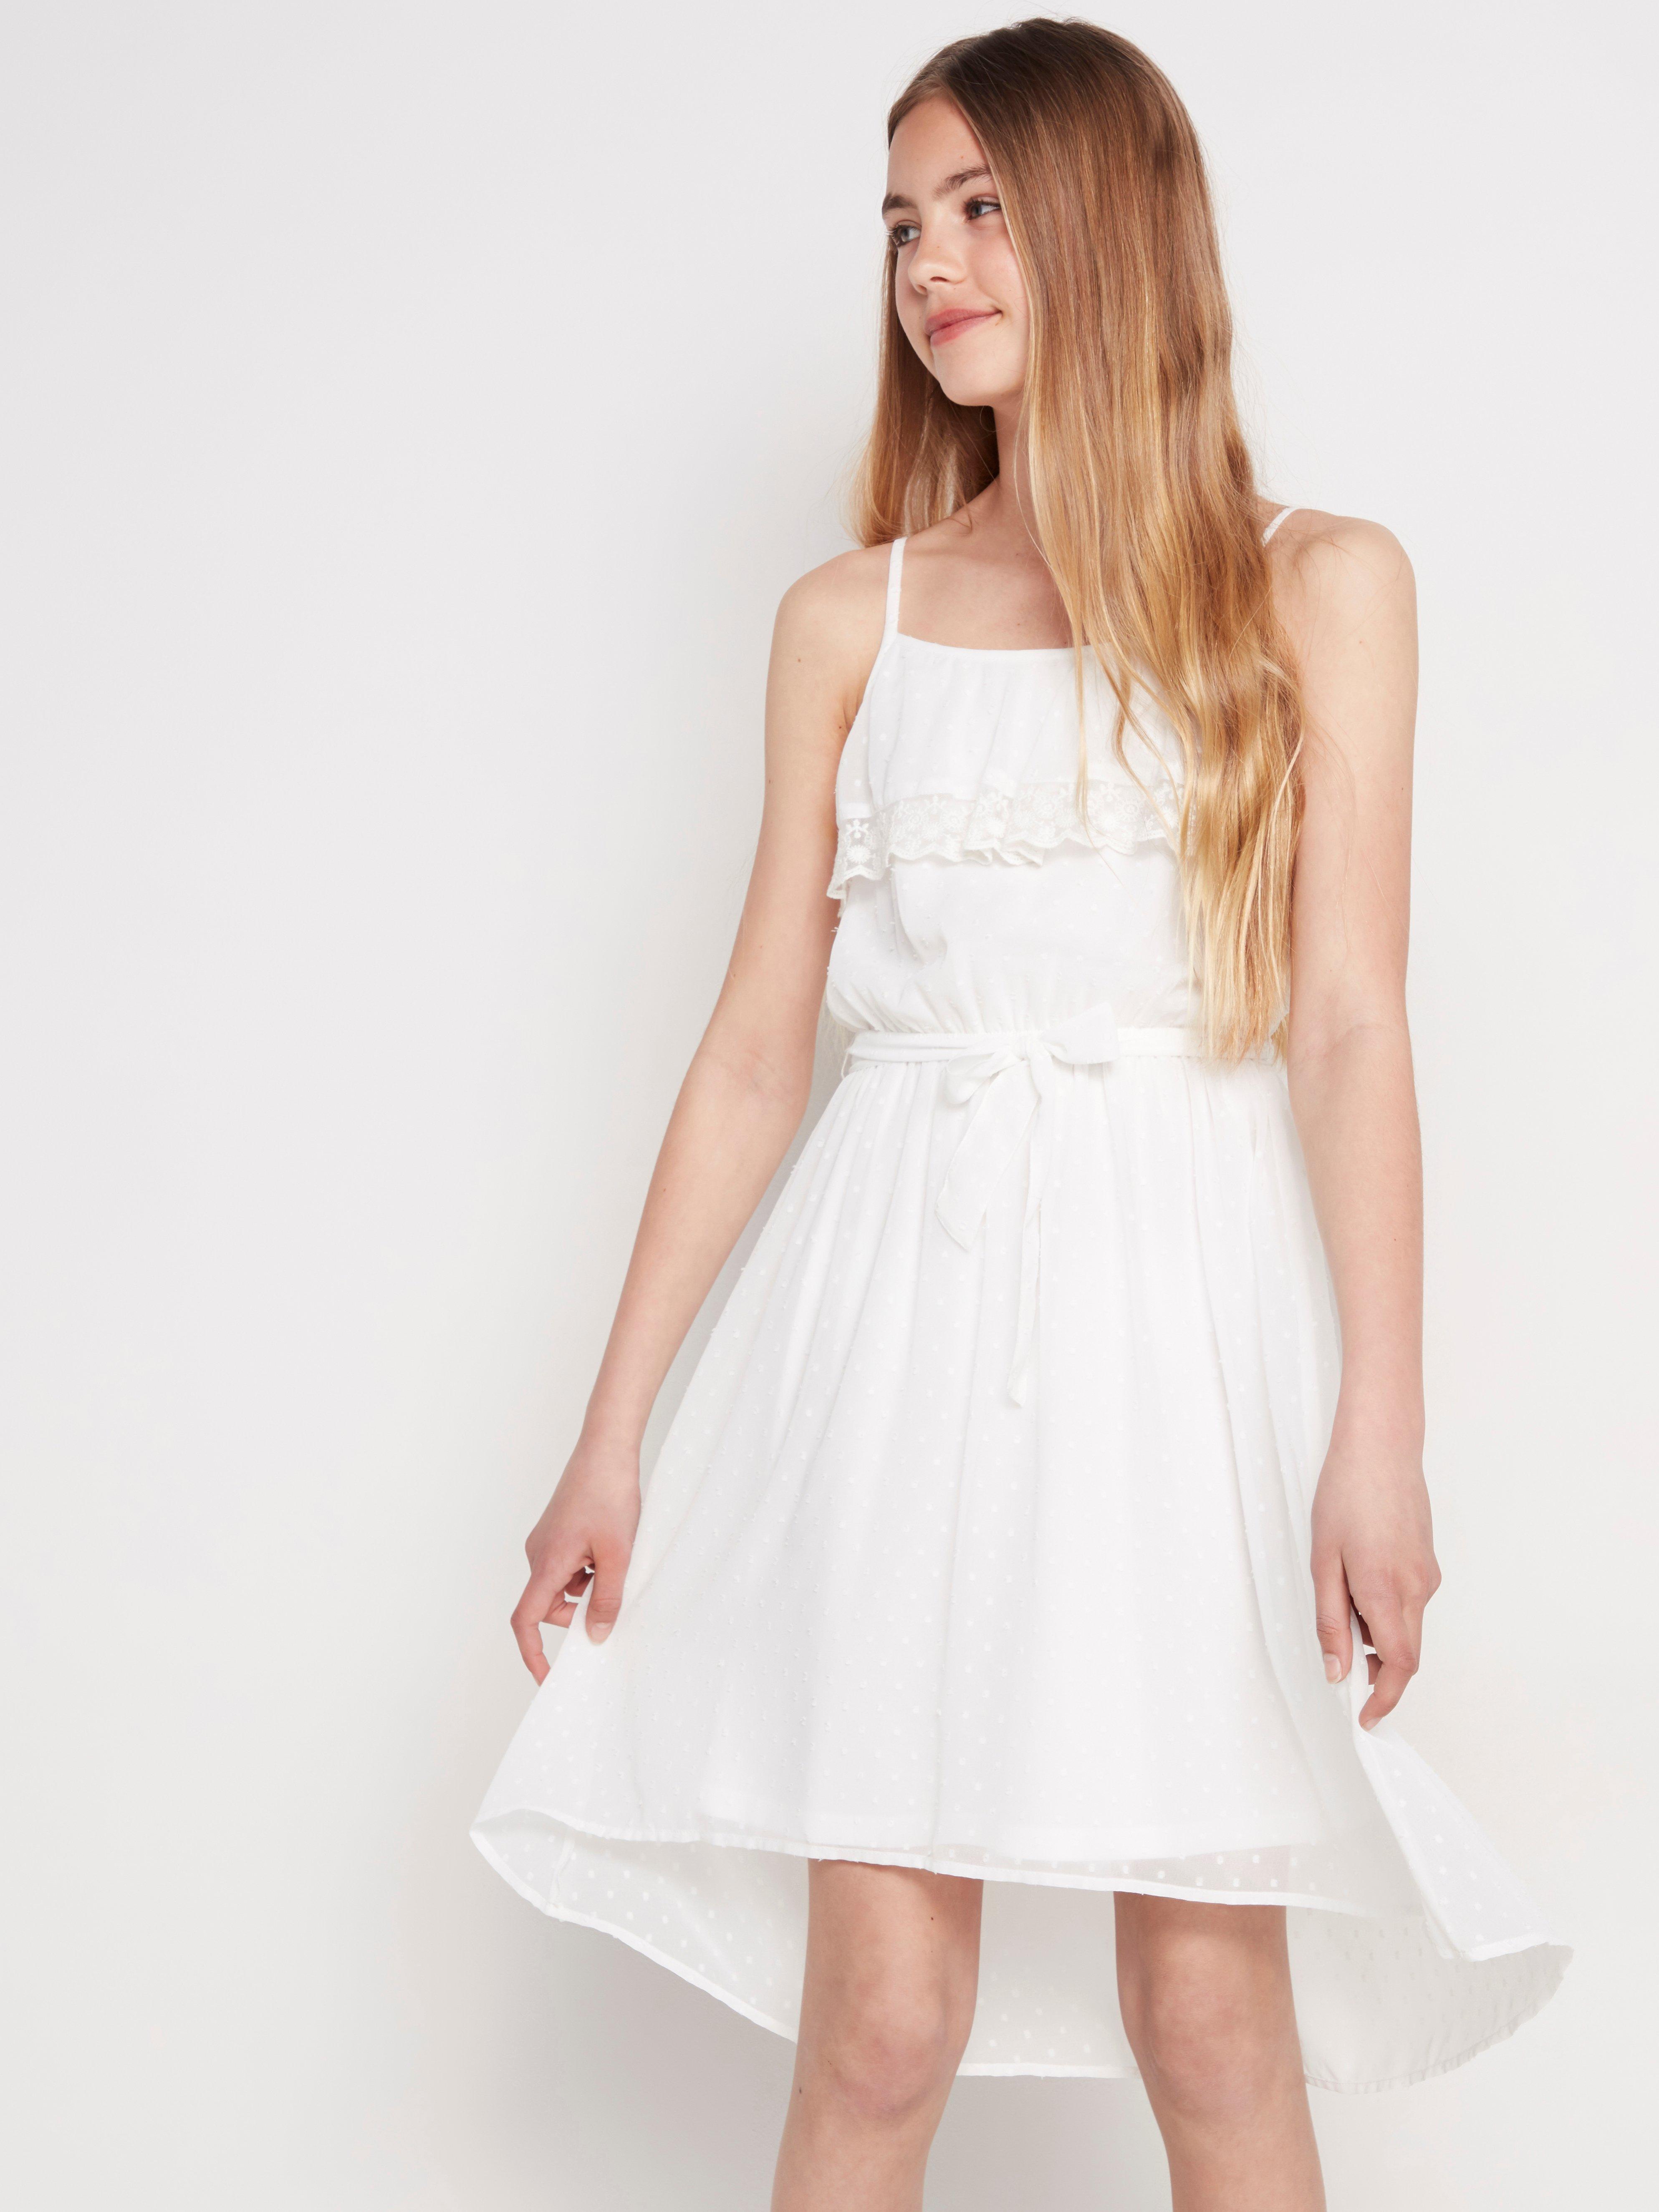 White chiffon dress with lace trim 